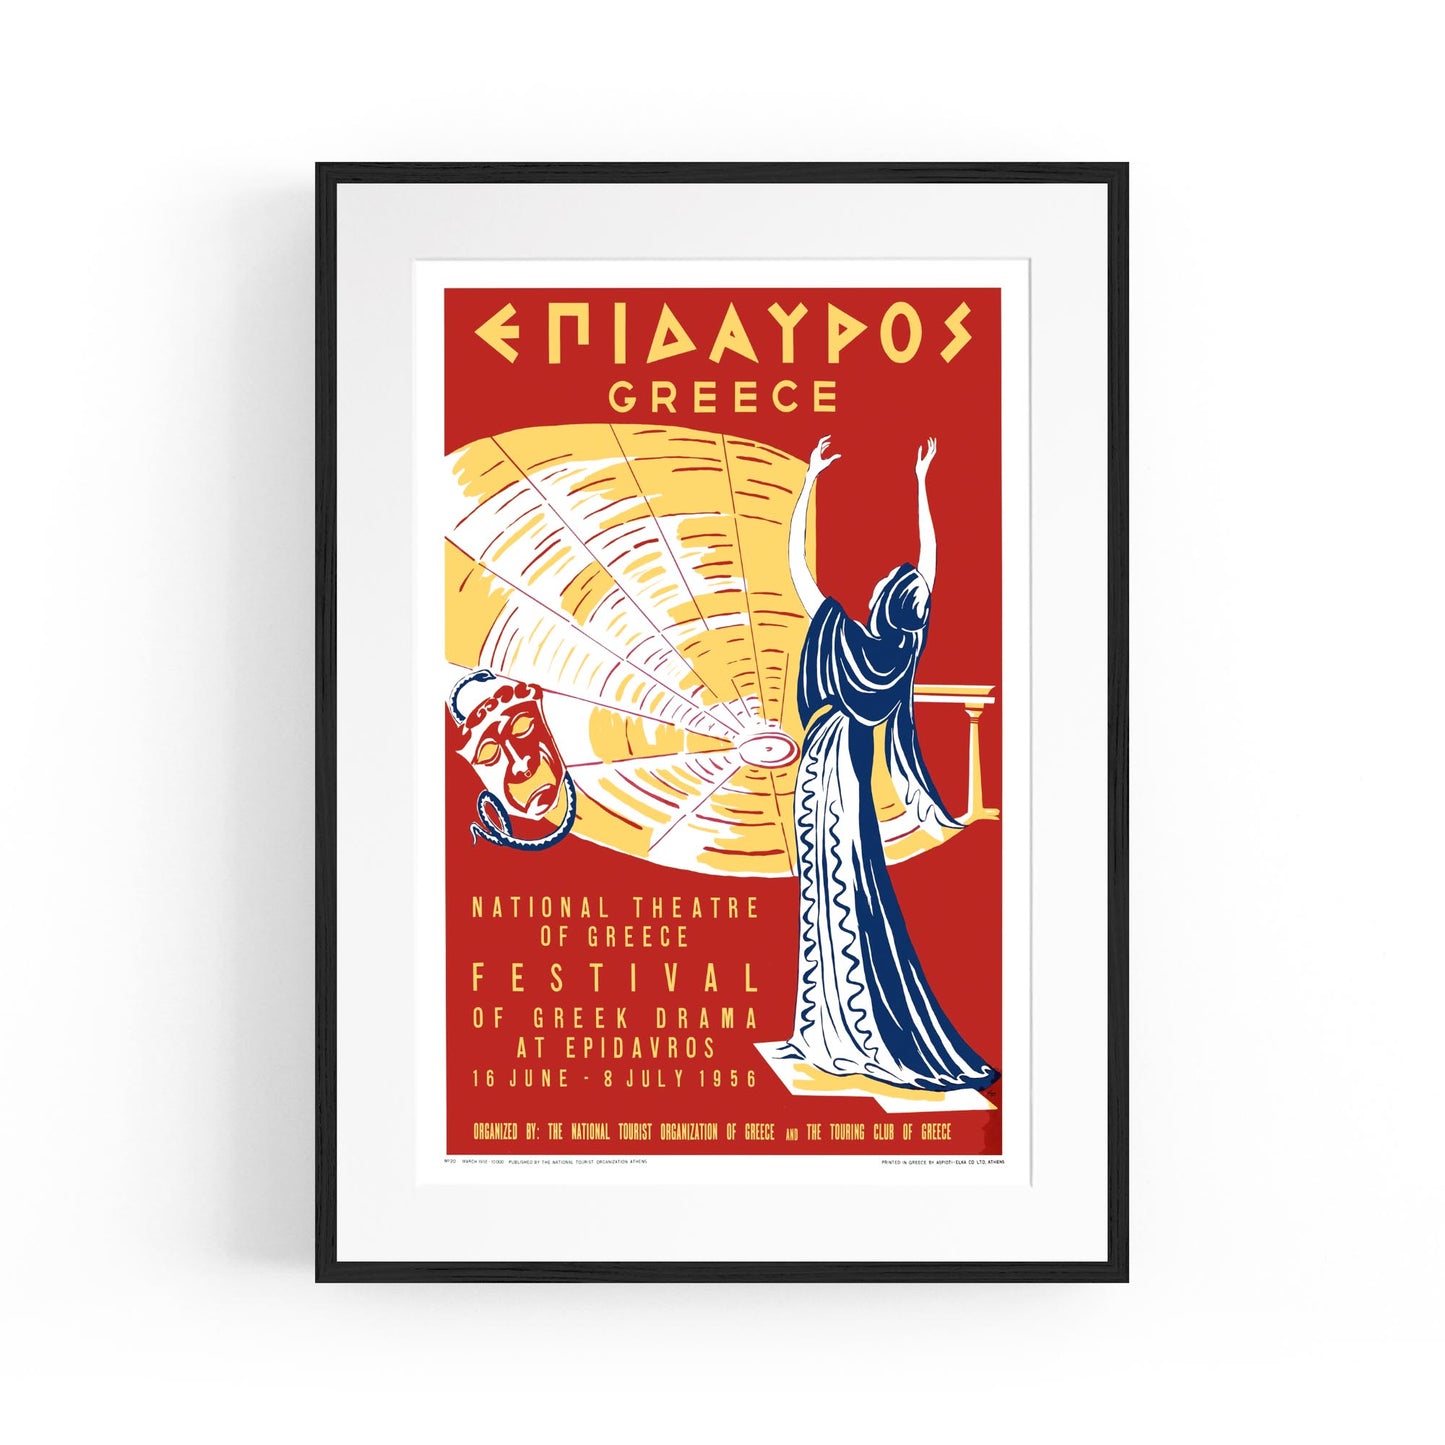 Epidavros, Greece "National Theatre of Greece" | Framed Vintage Travel Poster